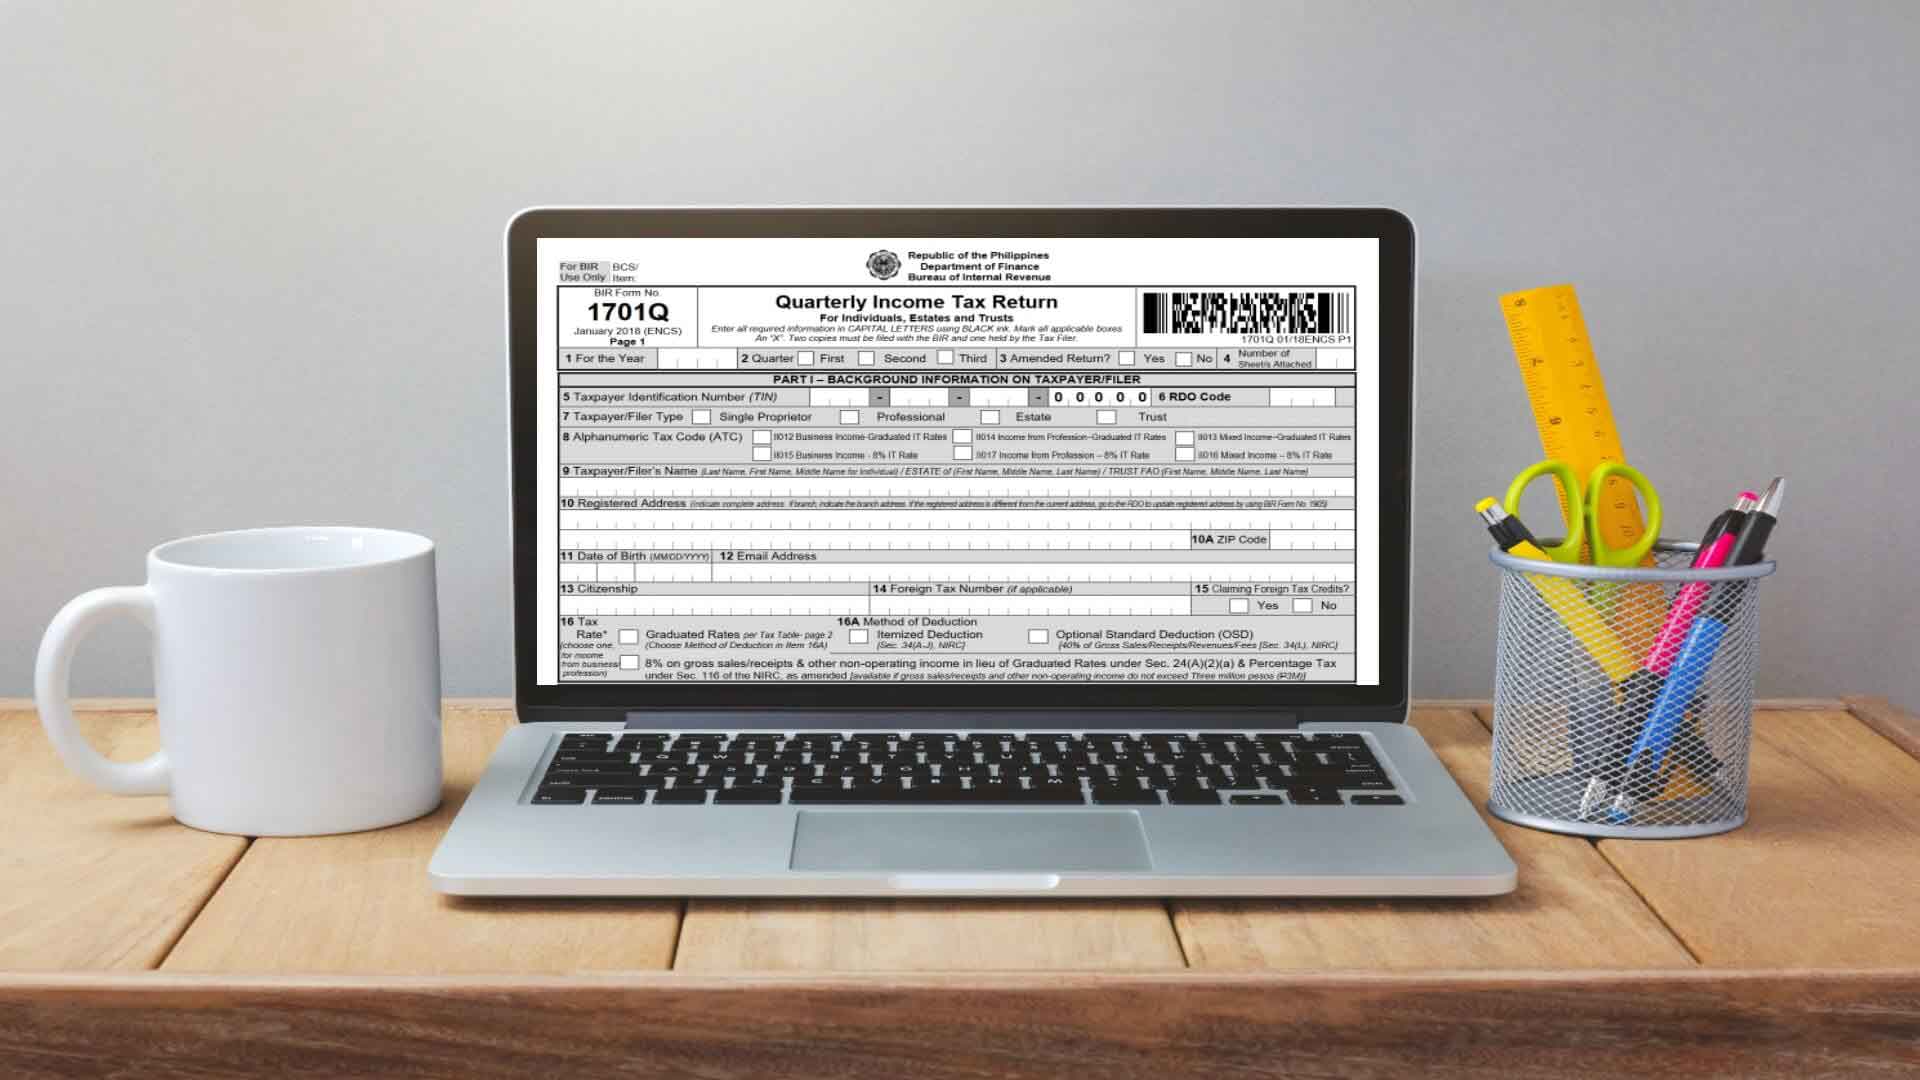 BIR Form 1701Q Quarterly Tax Return